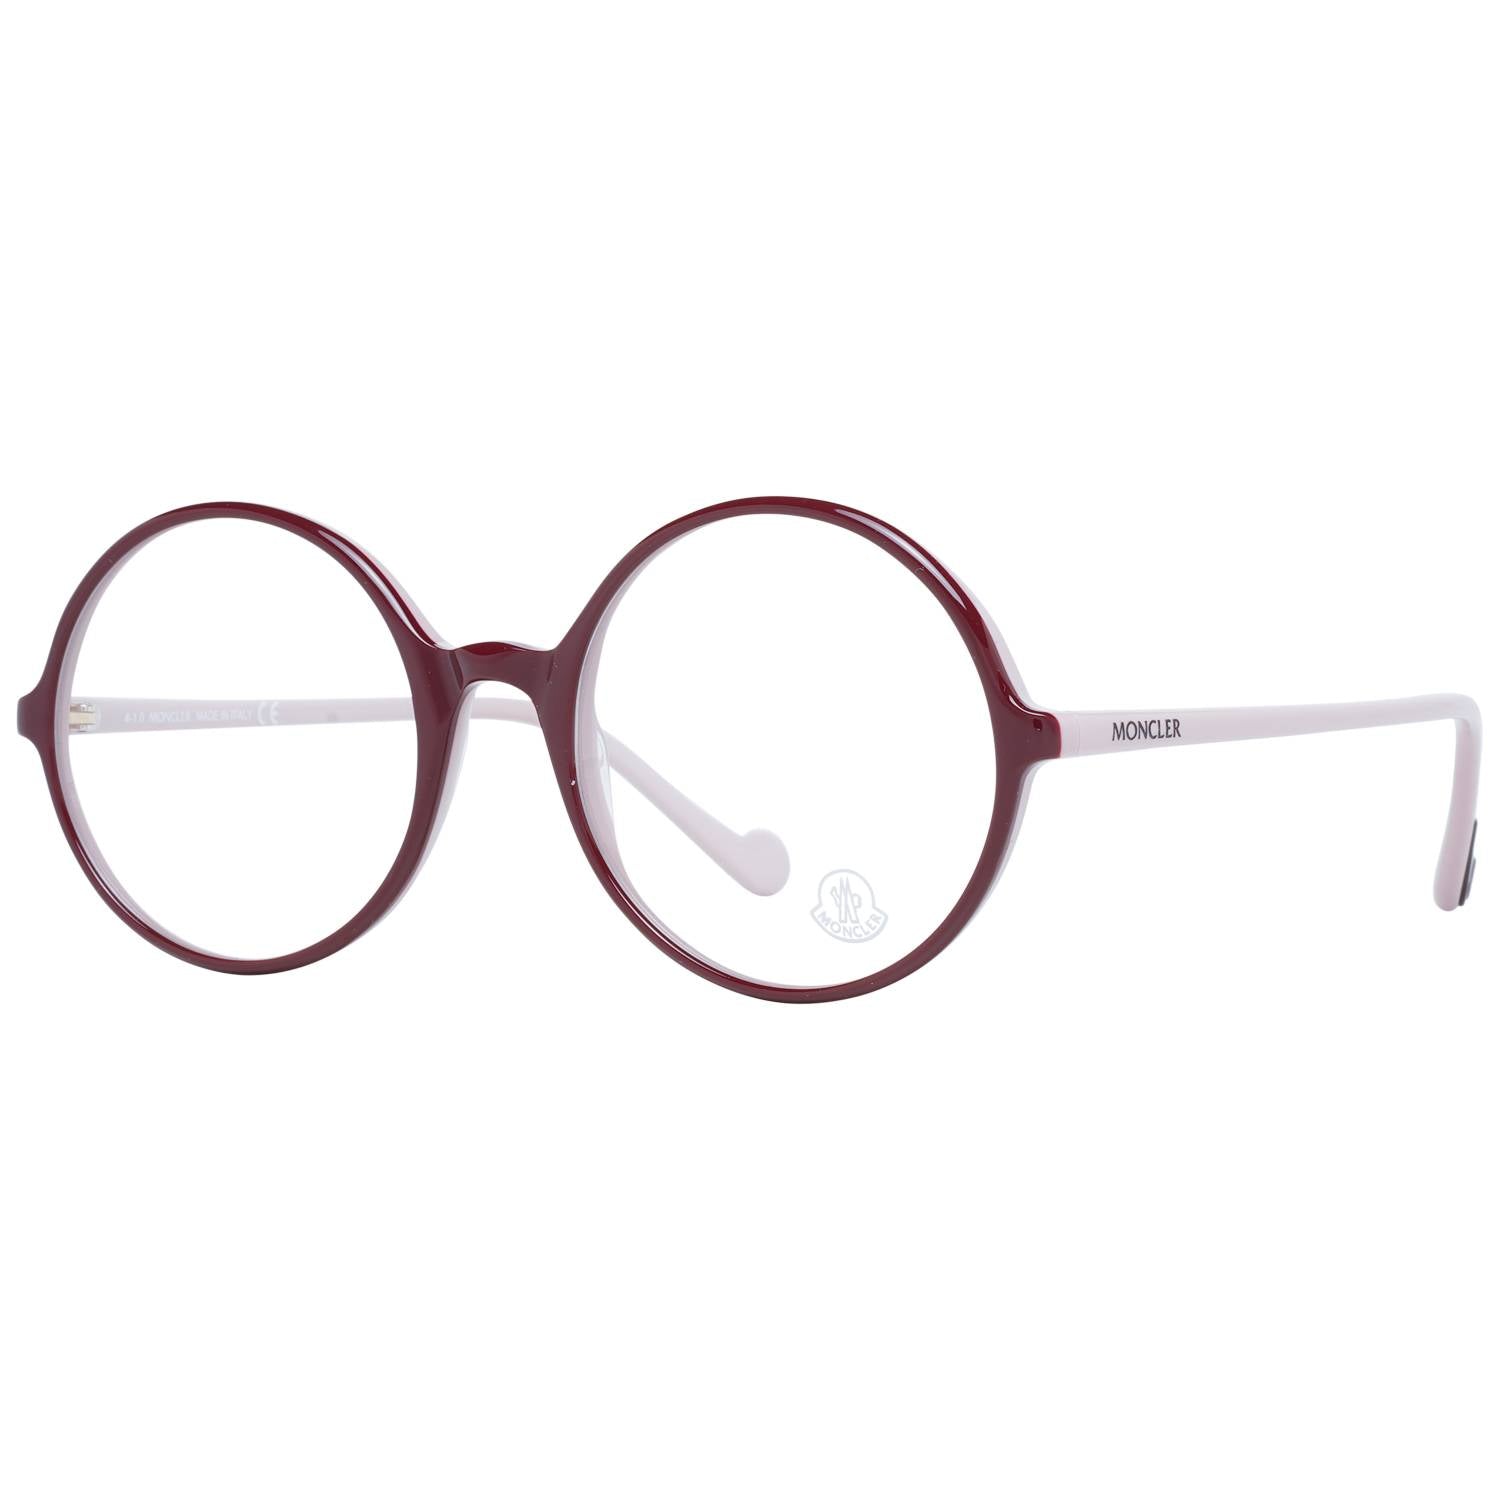 Moncler Eyeglasses Moncler Glasses Frames ML5088 083 54mm Eyeglasses Eyewear UK USA Australia 